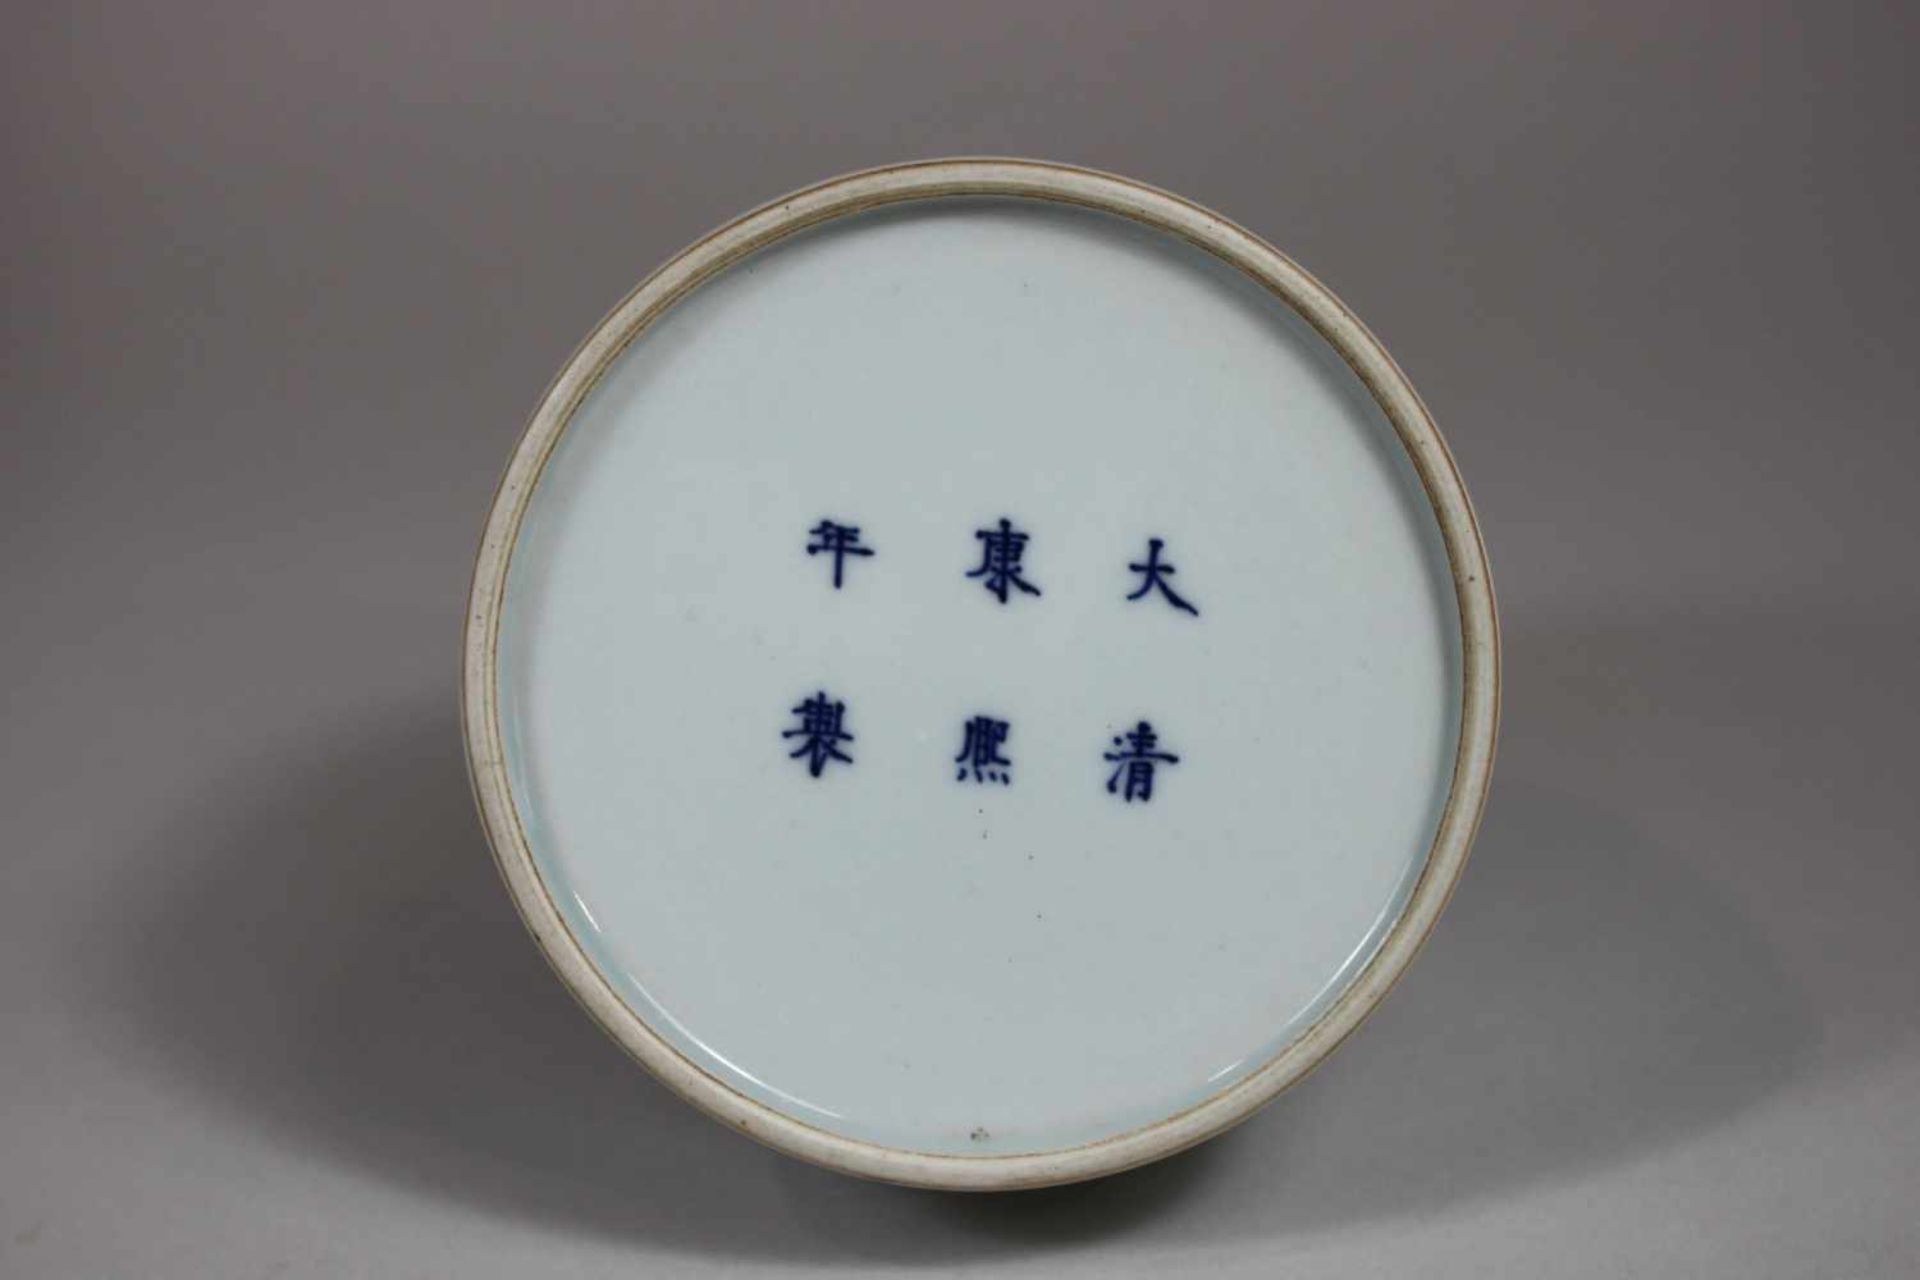 Celadonvase mit Fabelwesen Motiv, China, blaue Marken unter Grasur am Boden. H.: 20 cm, B.: 10,5 - Bild 2 aus 2